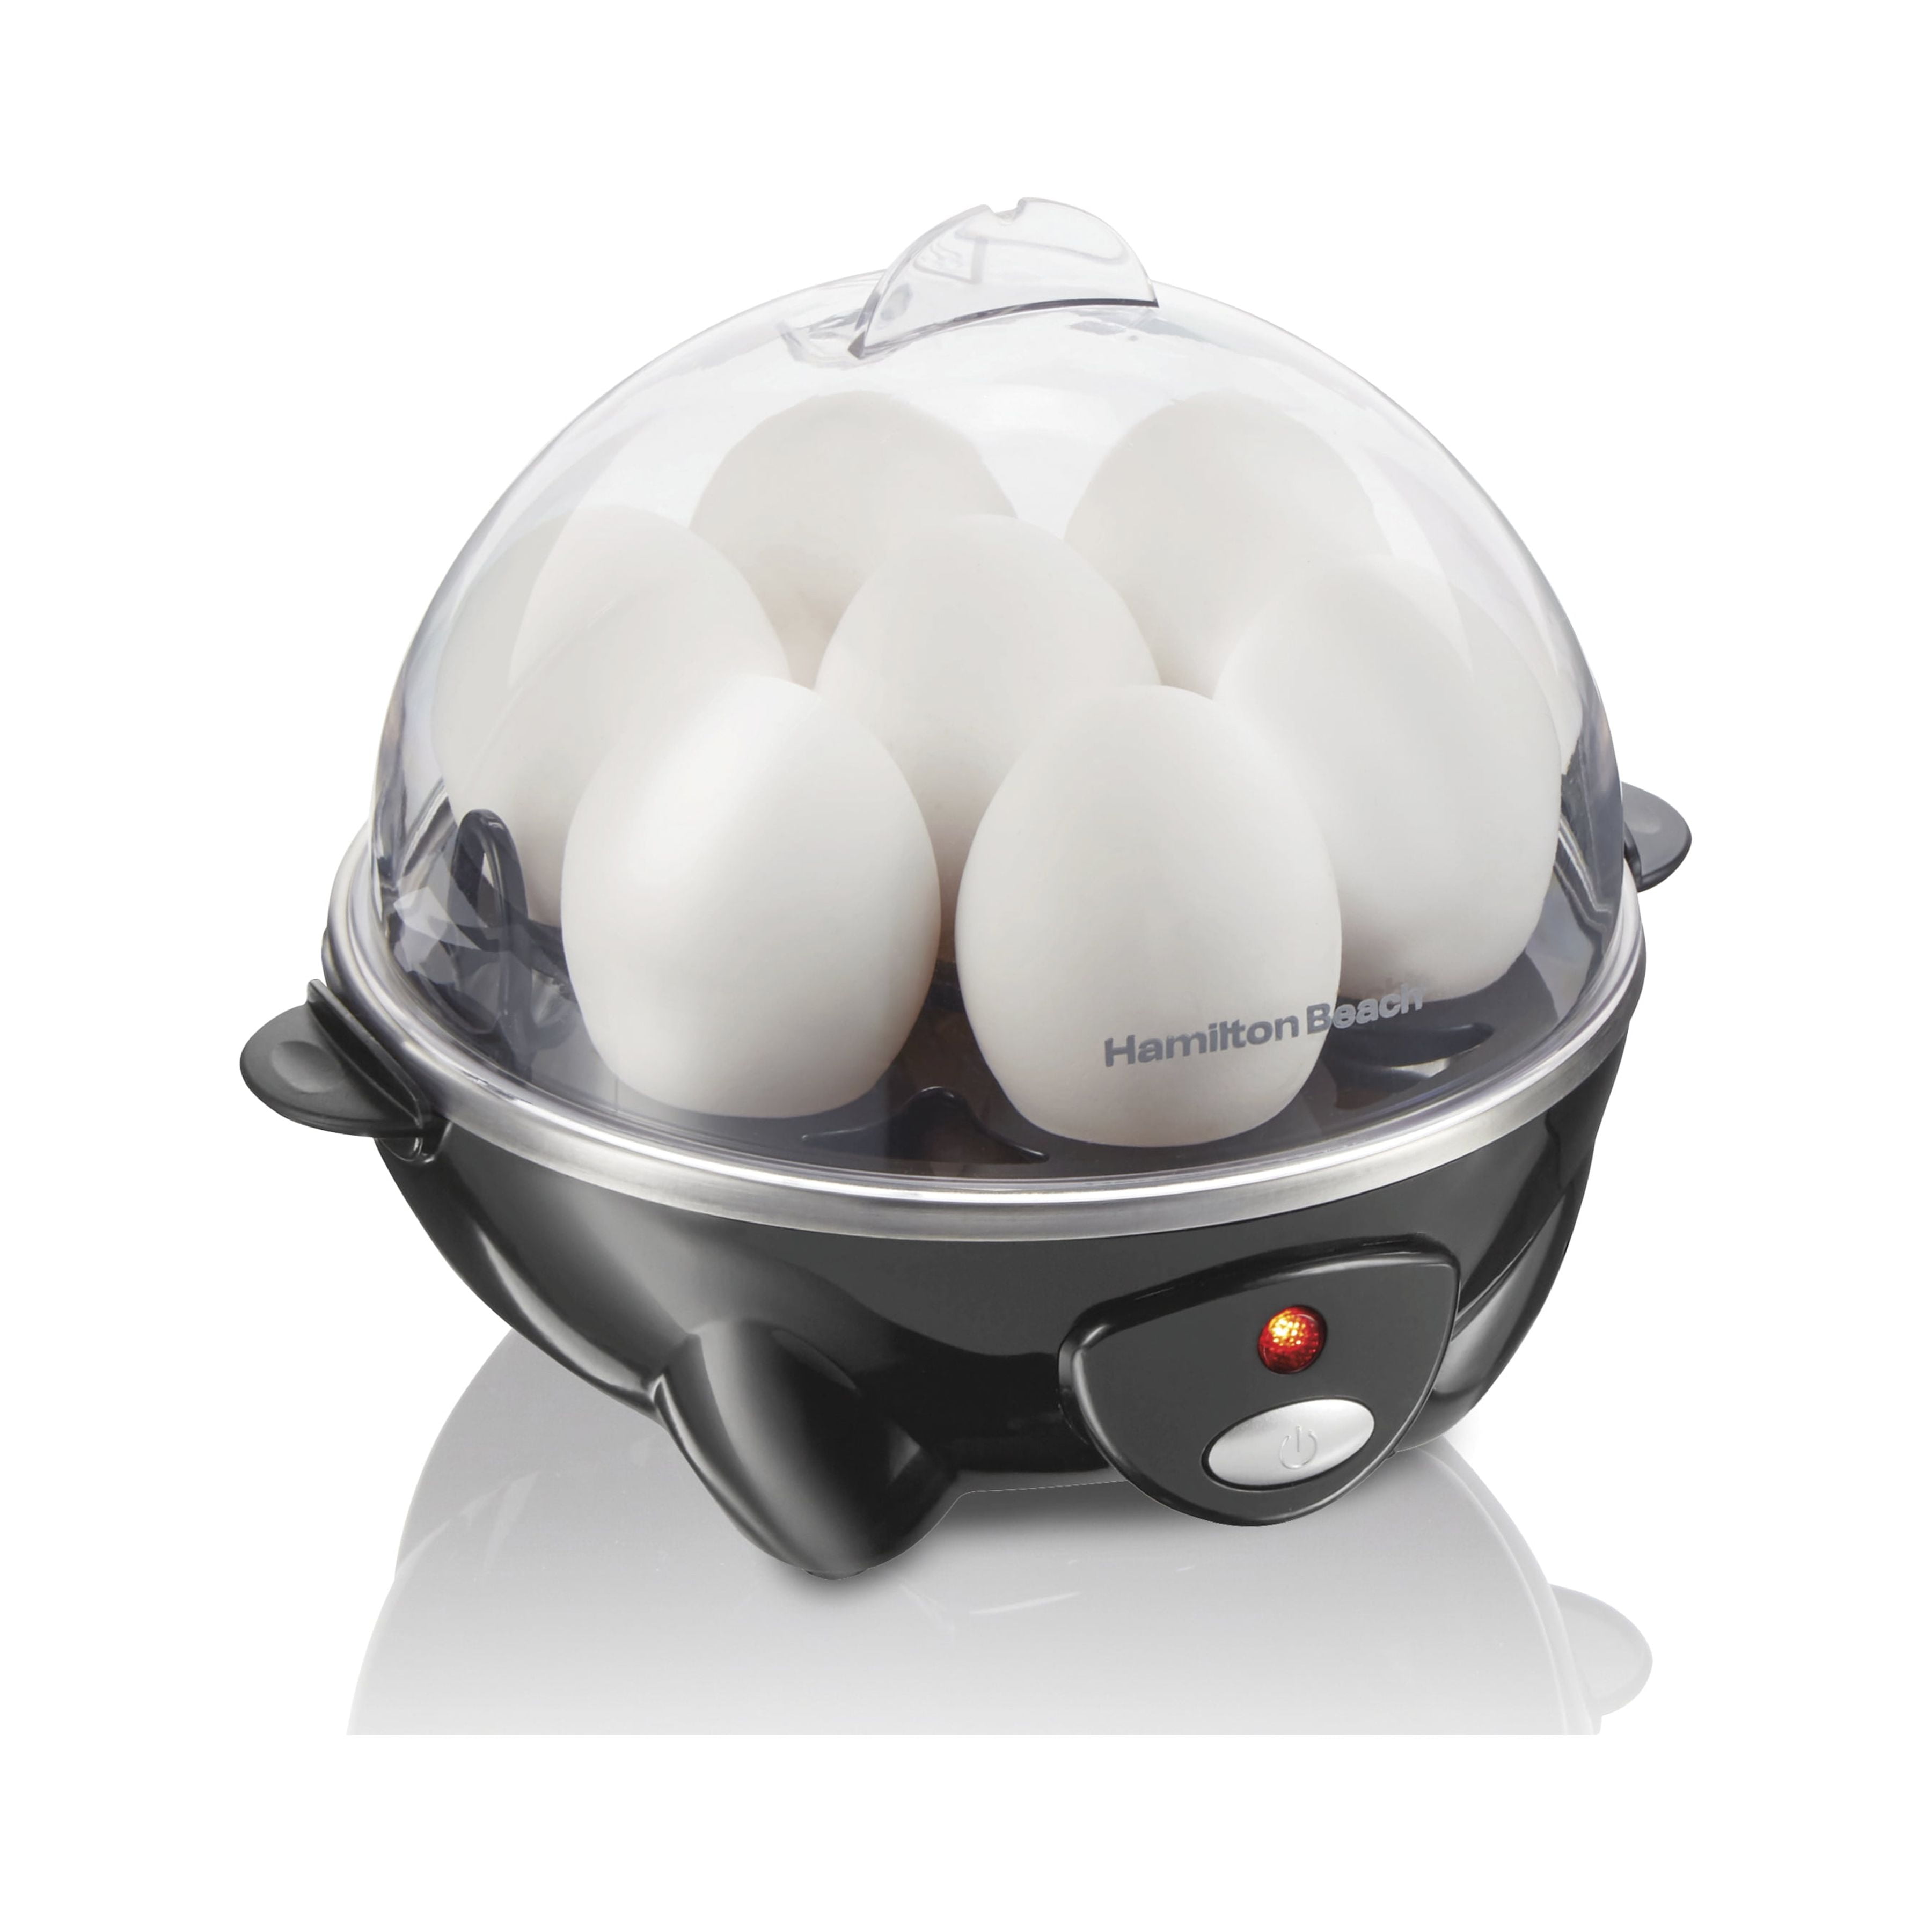 Eggpod by Emson Egg Cooker Wireless Microwave Hardboiled Egg Maker, Cooker,  Egg Boiler & Steamer, 4 Perfectly-Cooked Hard boiled Eggs in Under 9